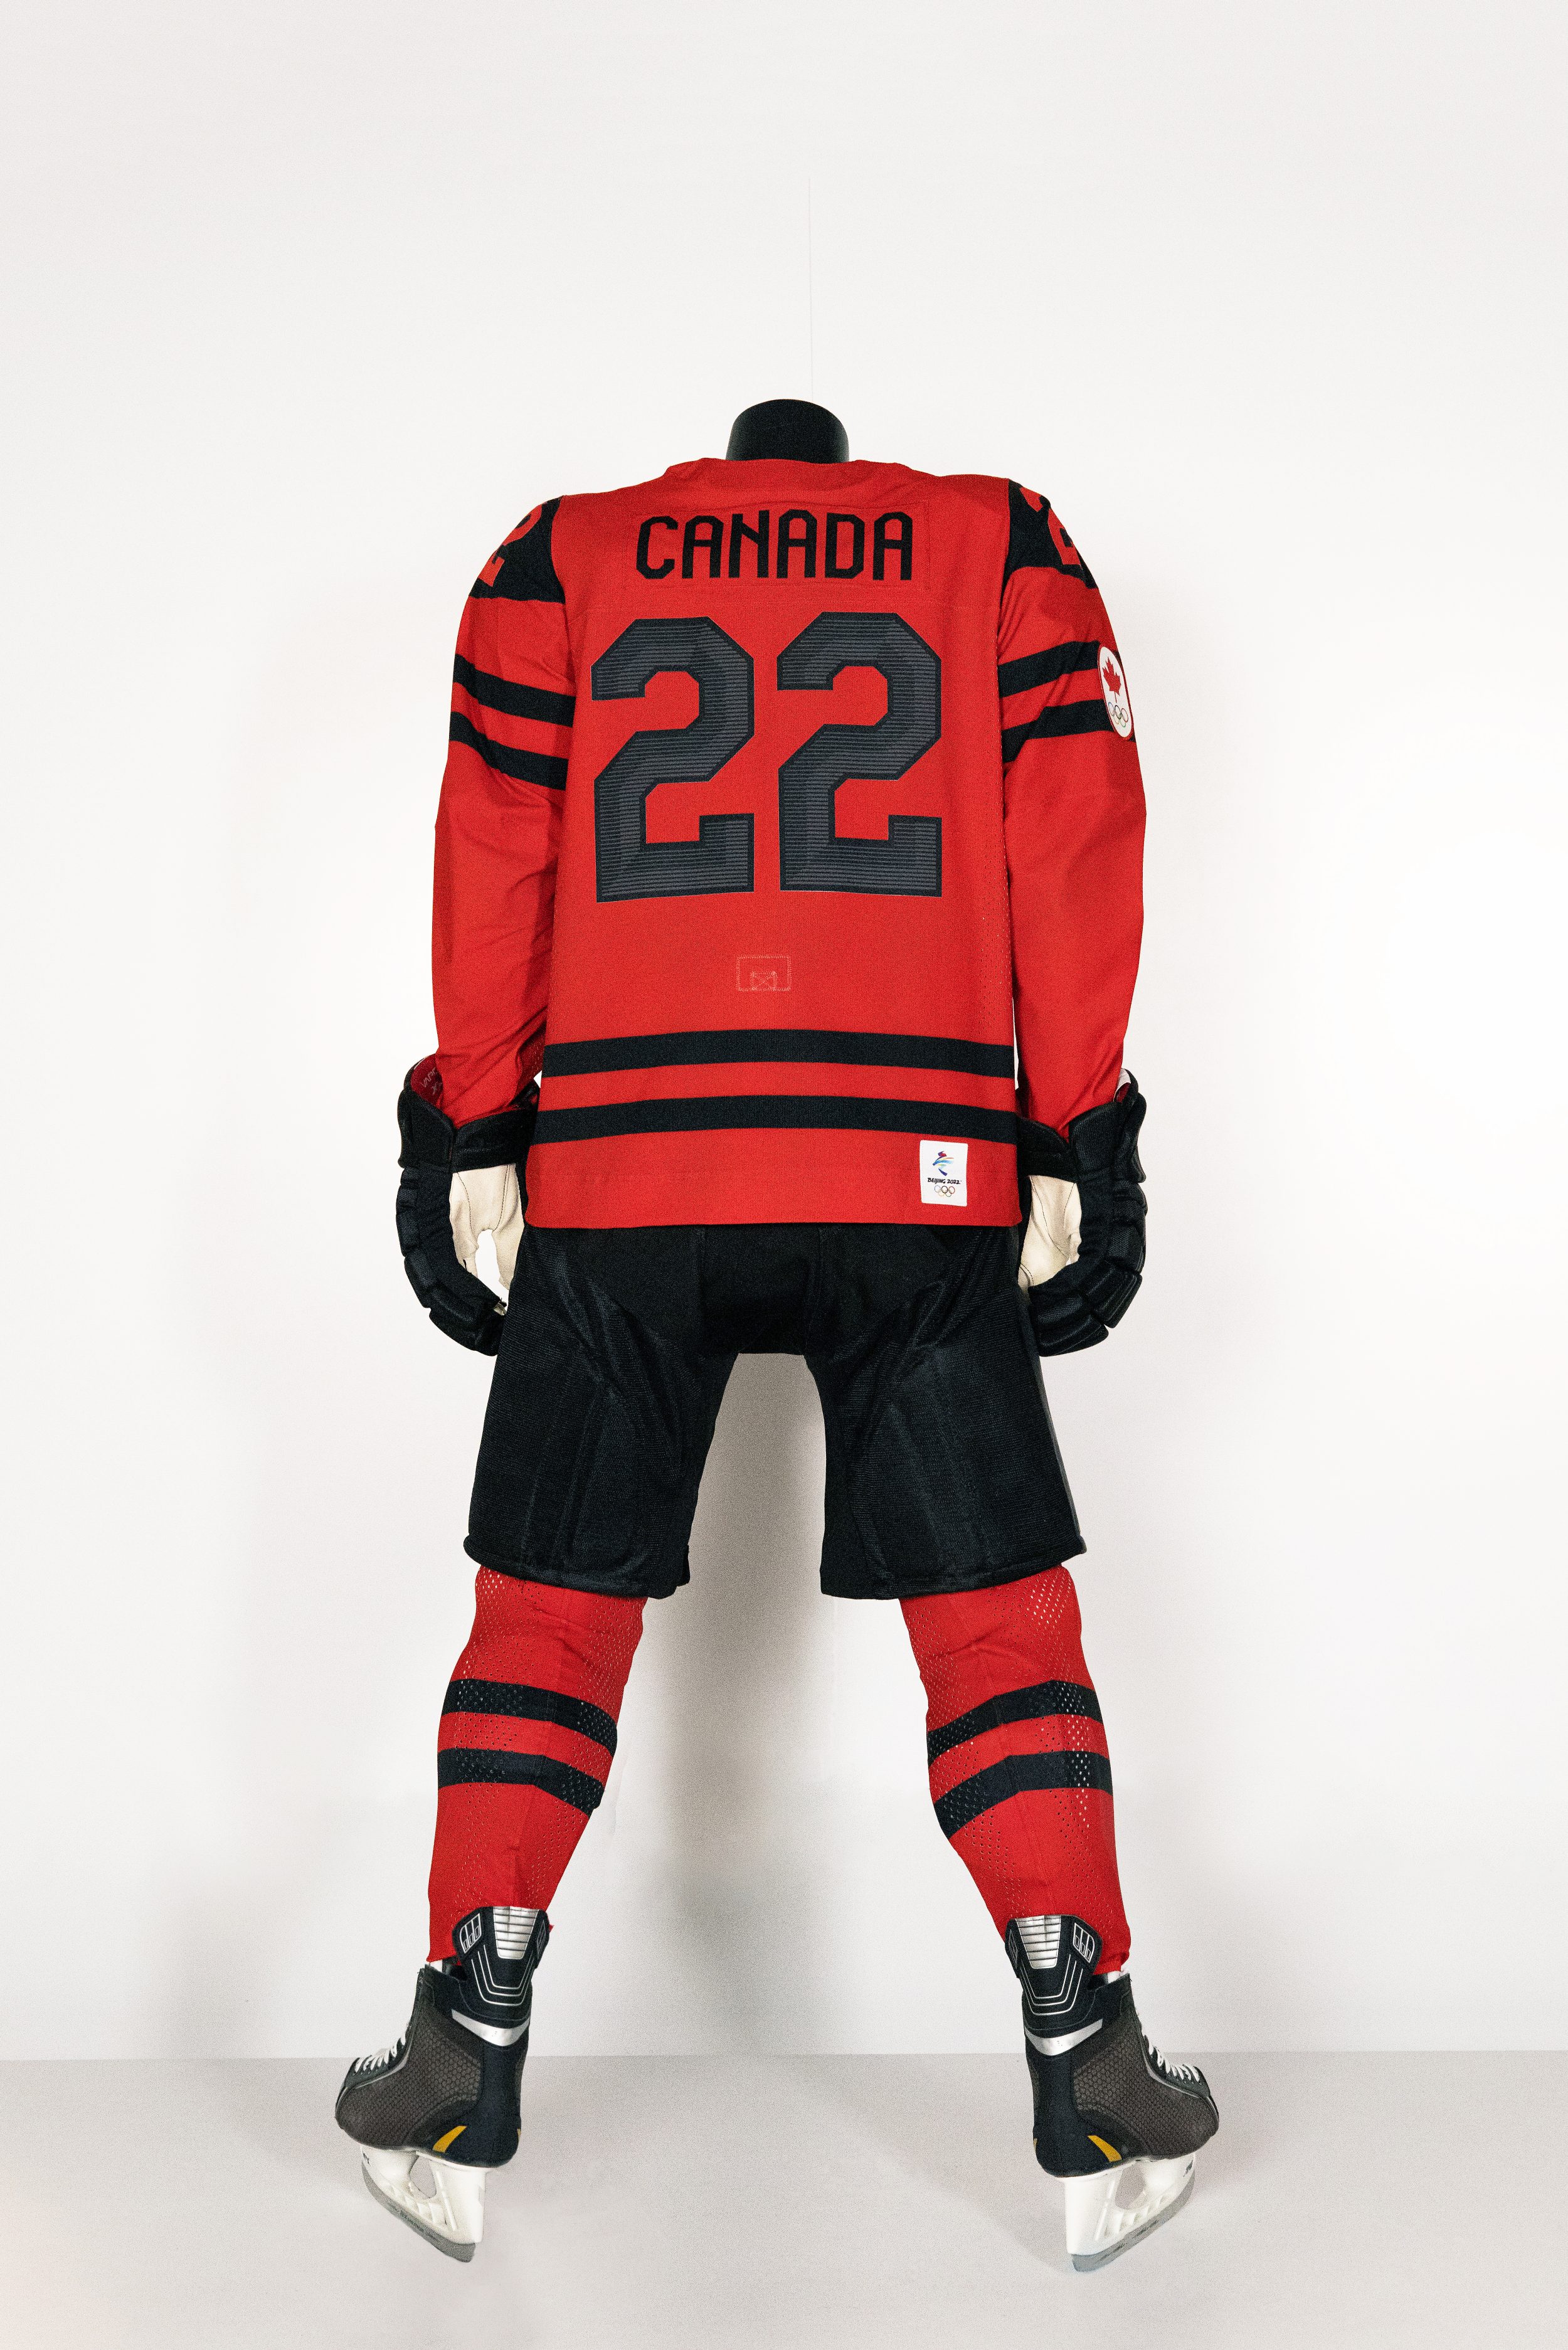 hockey canada jersey 2016